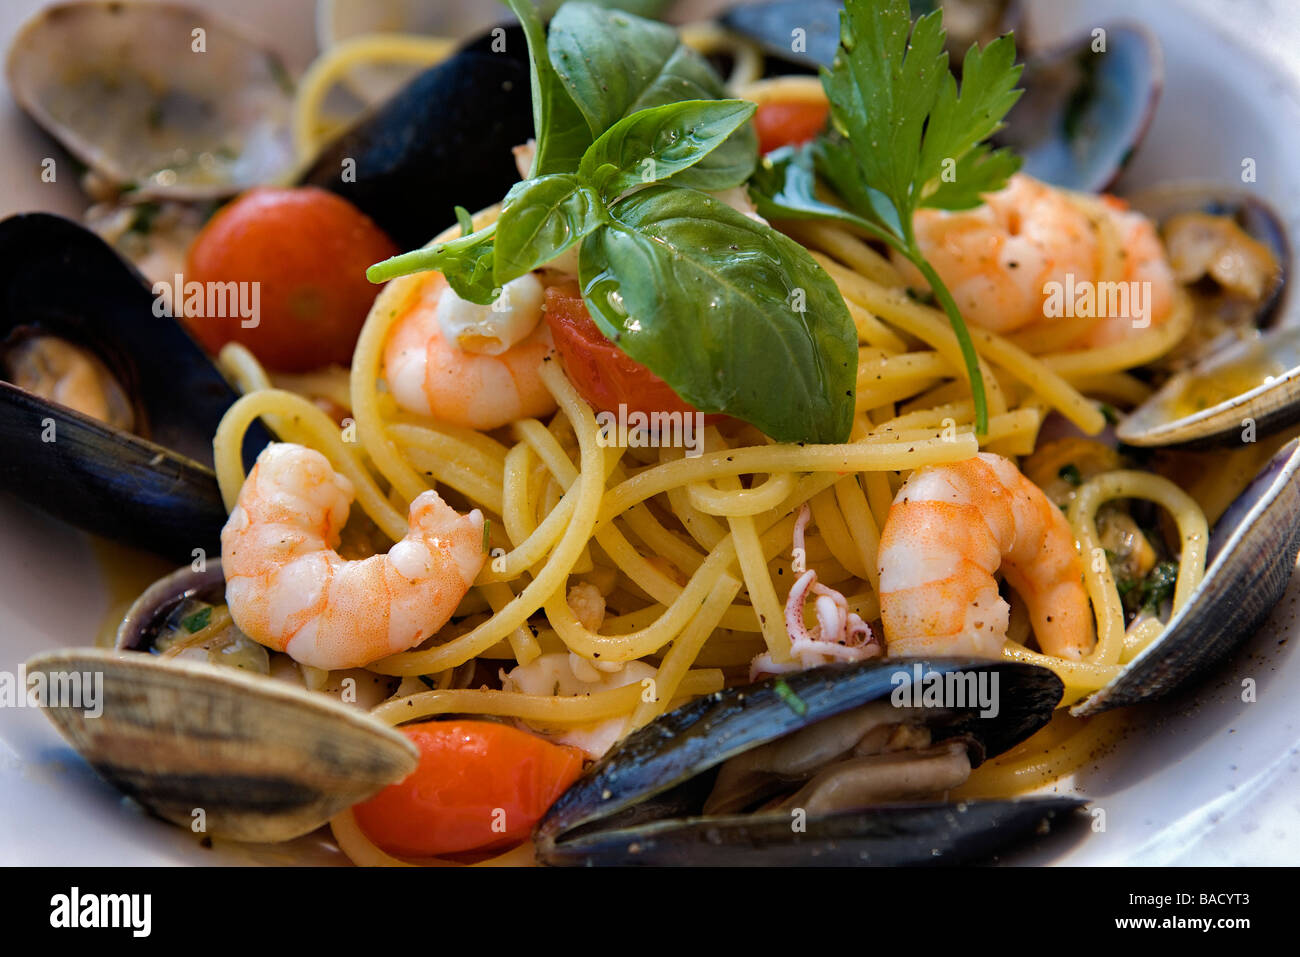 Итальянская национальная кухня. Итальянская еда. Итальянская кухня блюда. Традиционные блюда Италии.